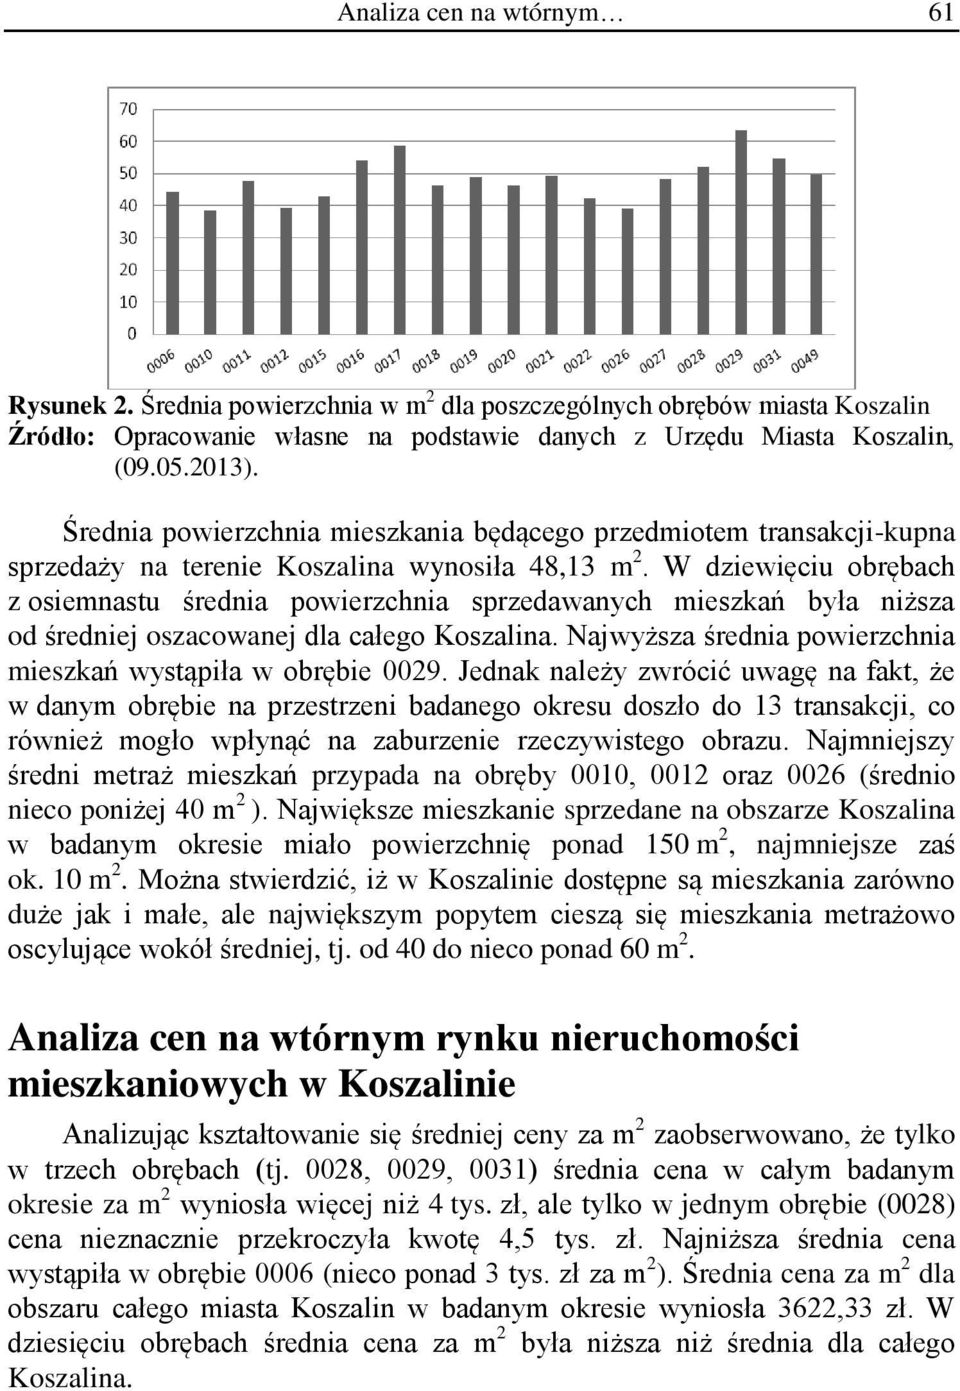 W dziewięciu obrębach z osiemnastu średnia powierzchnia sprzedawanych mieszkań była niższa od średniej oszacowanej dla całego Koszalina.